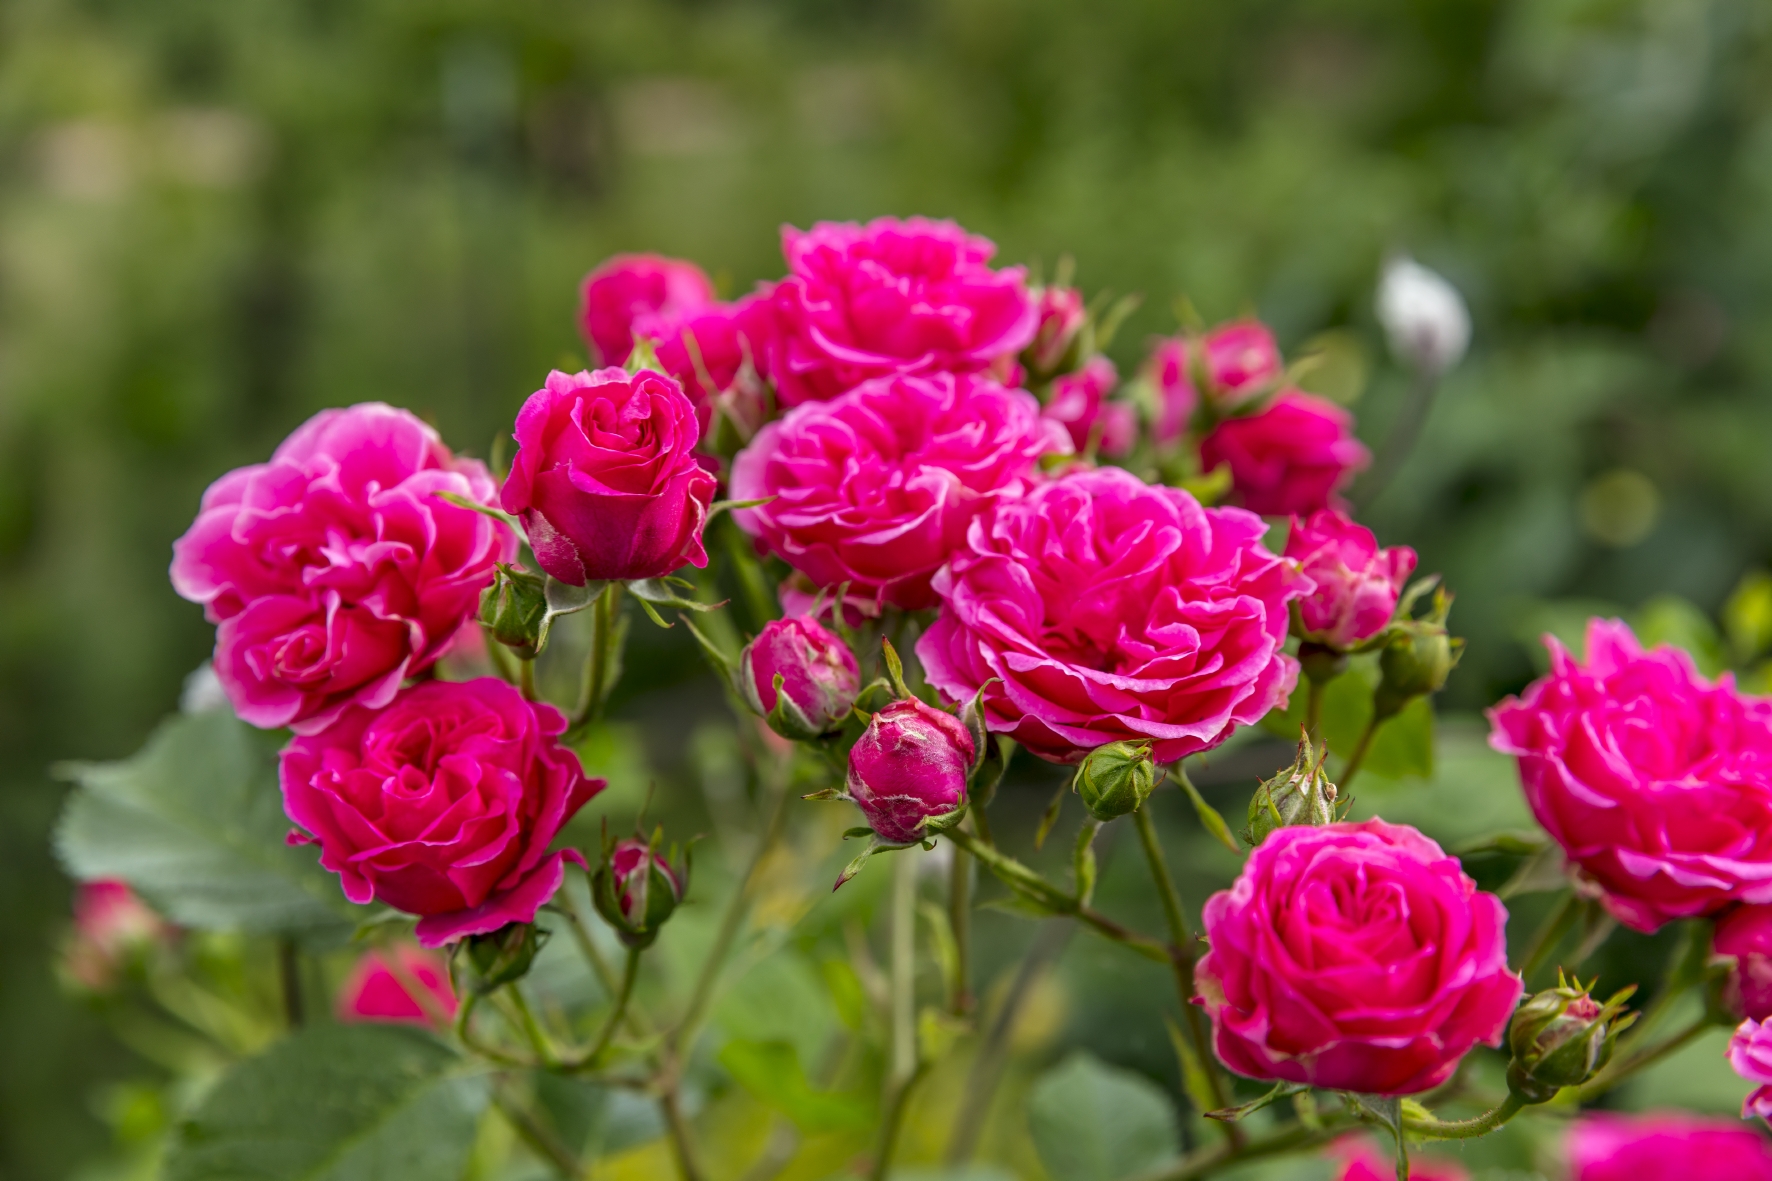 Rosen gibt es in vielen verschiedenen Farben wie z.B. in Violett